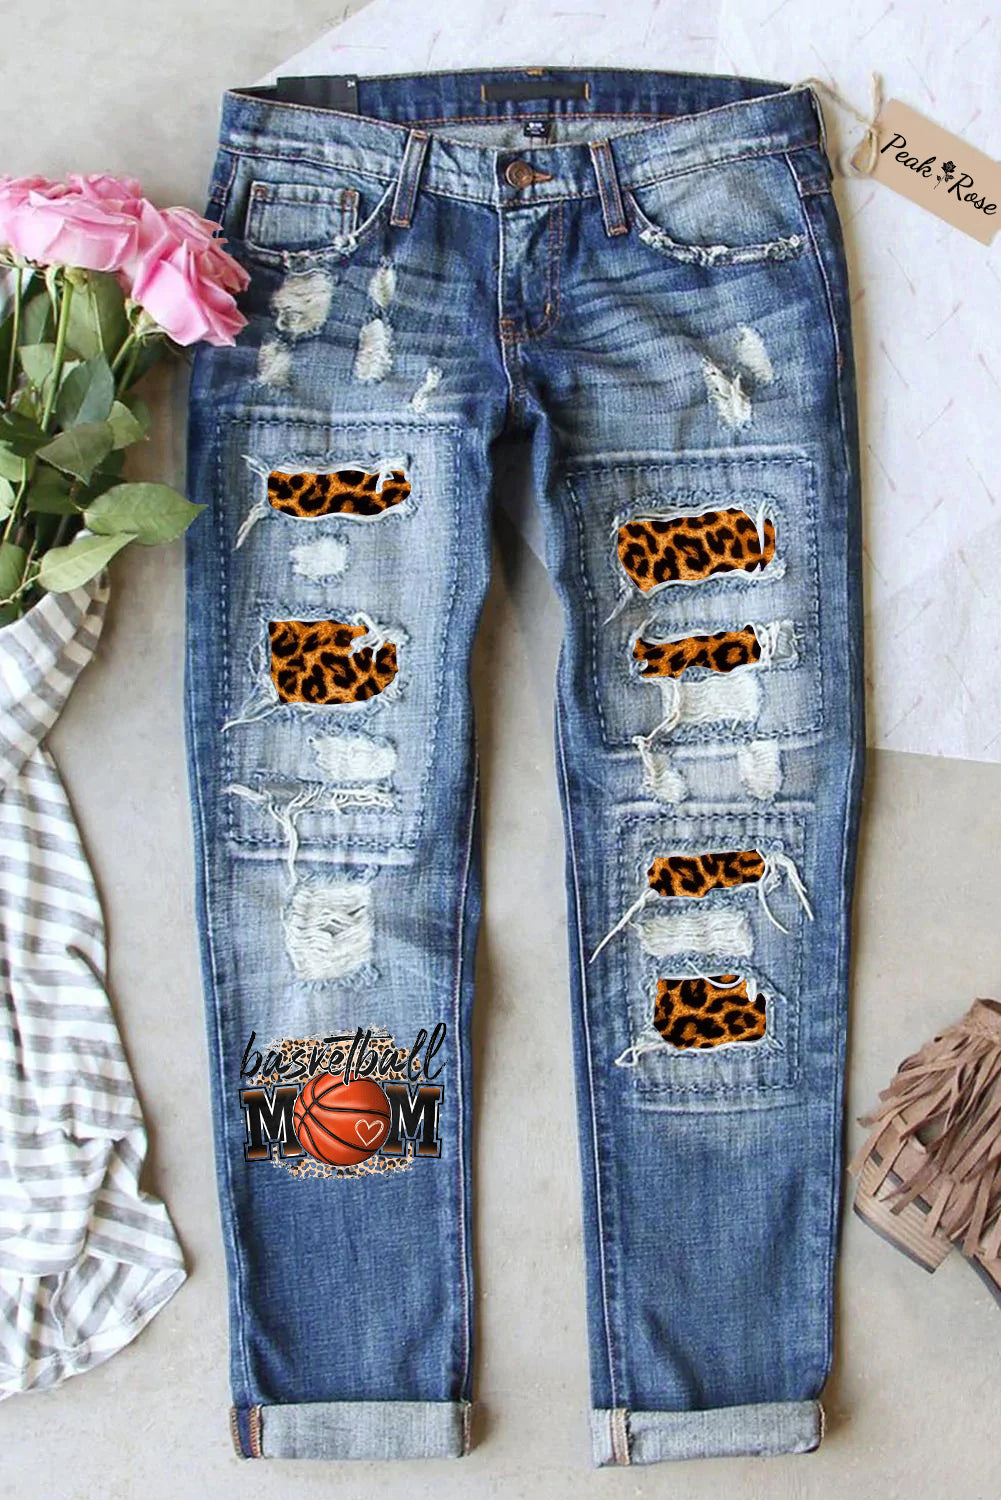 Gift For Basketball Lover Basketball Mom Leopard Print Denim Jeans